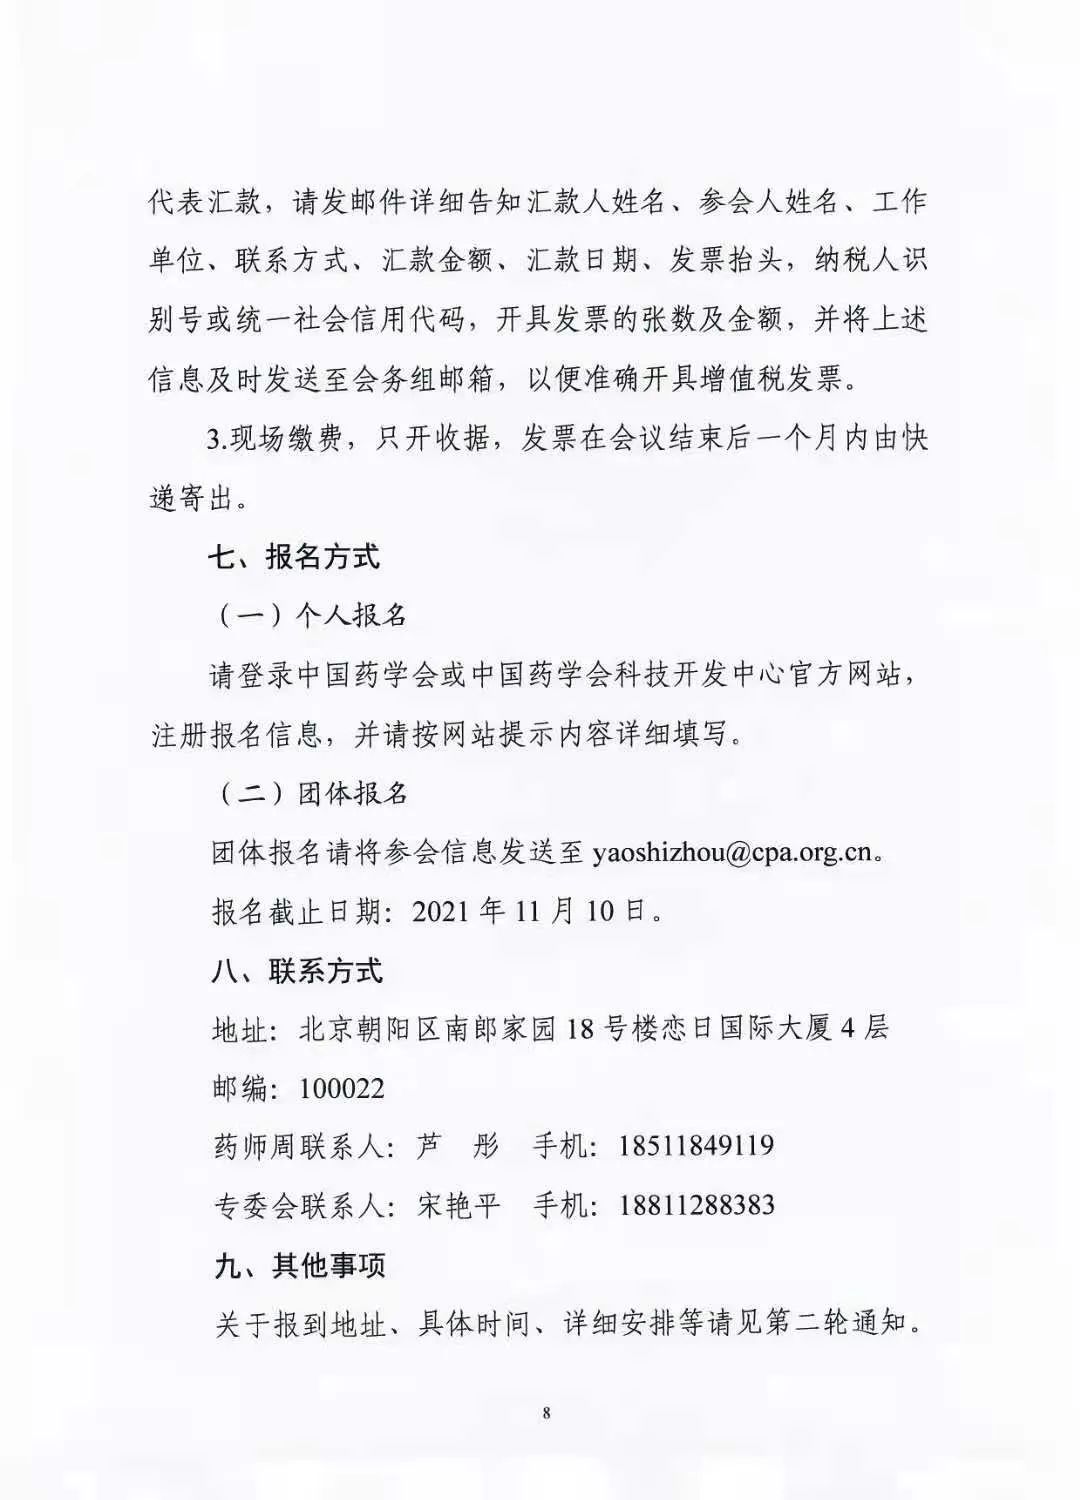 关于举办中国药学会第二十一届中国药师周的通知（第一轮）(图8)